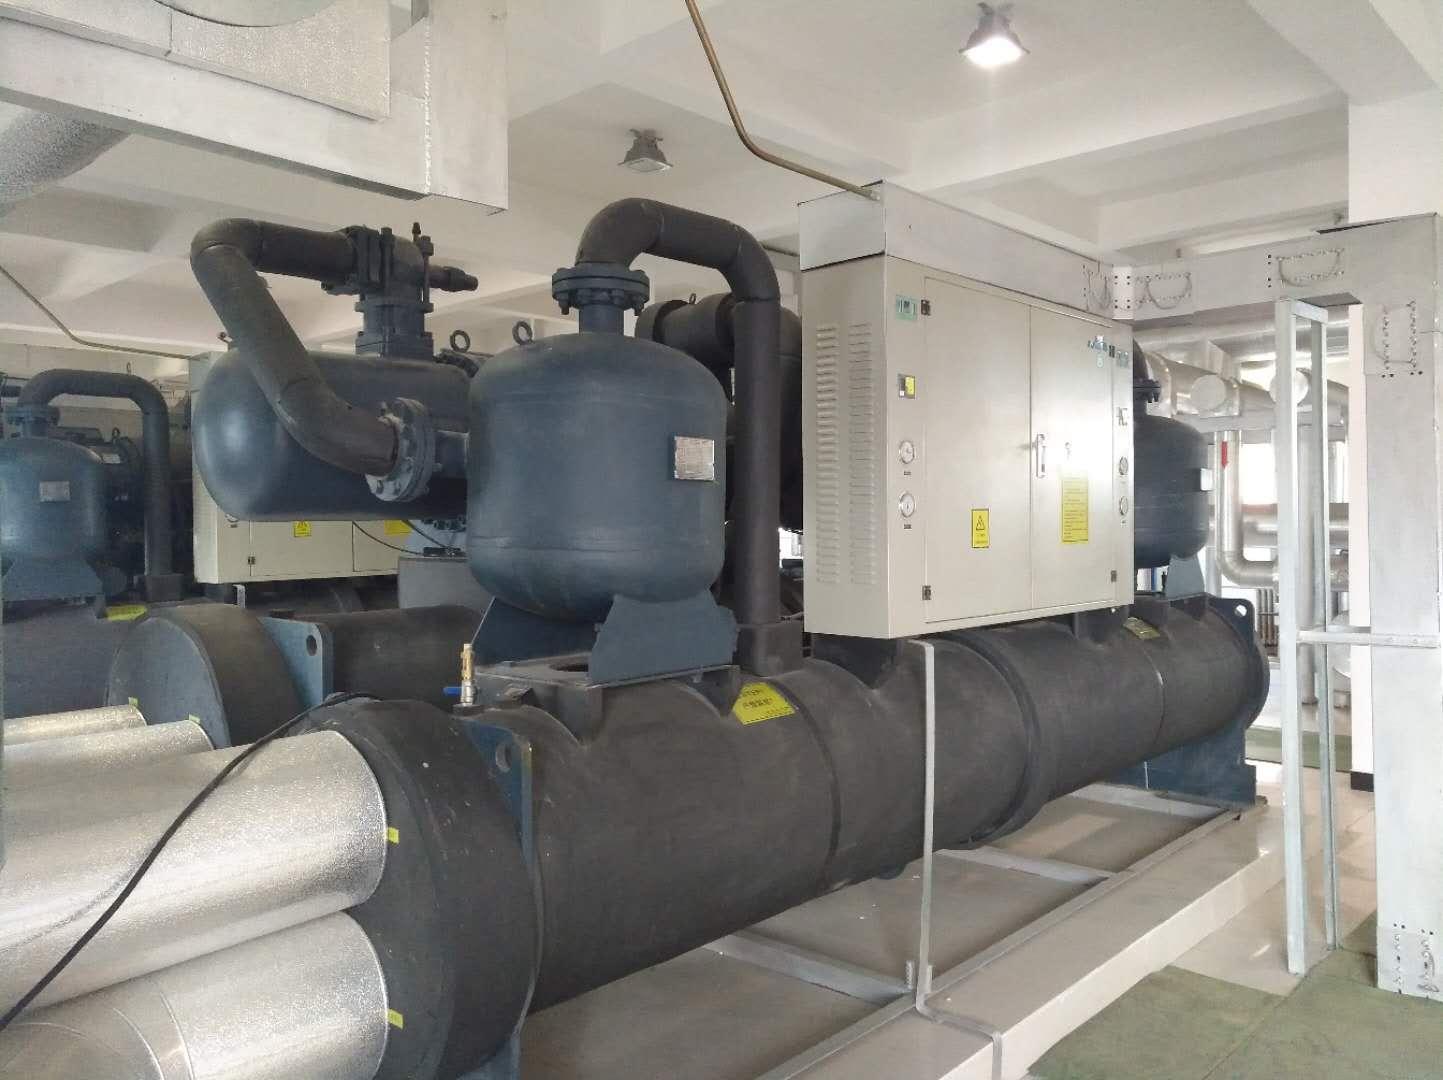 西安水源热泵机组维修保养清华同方，麦克维尔